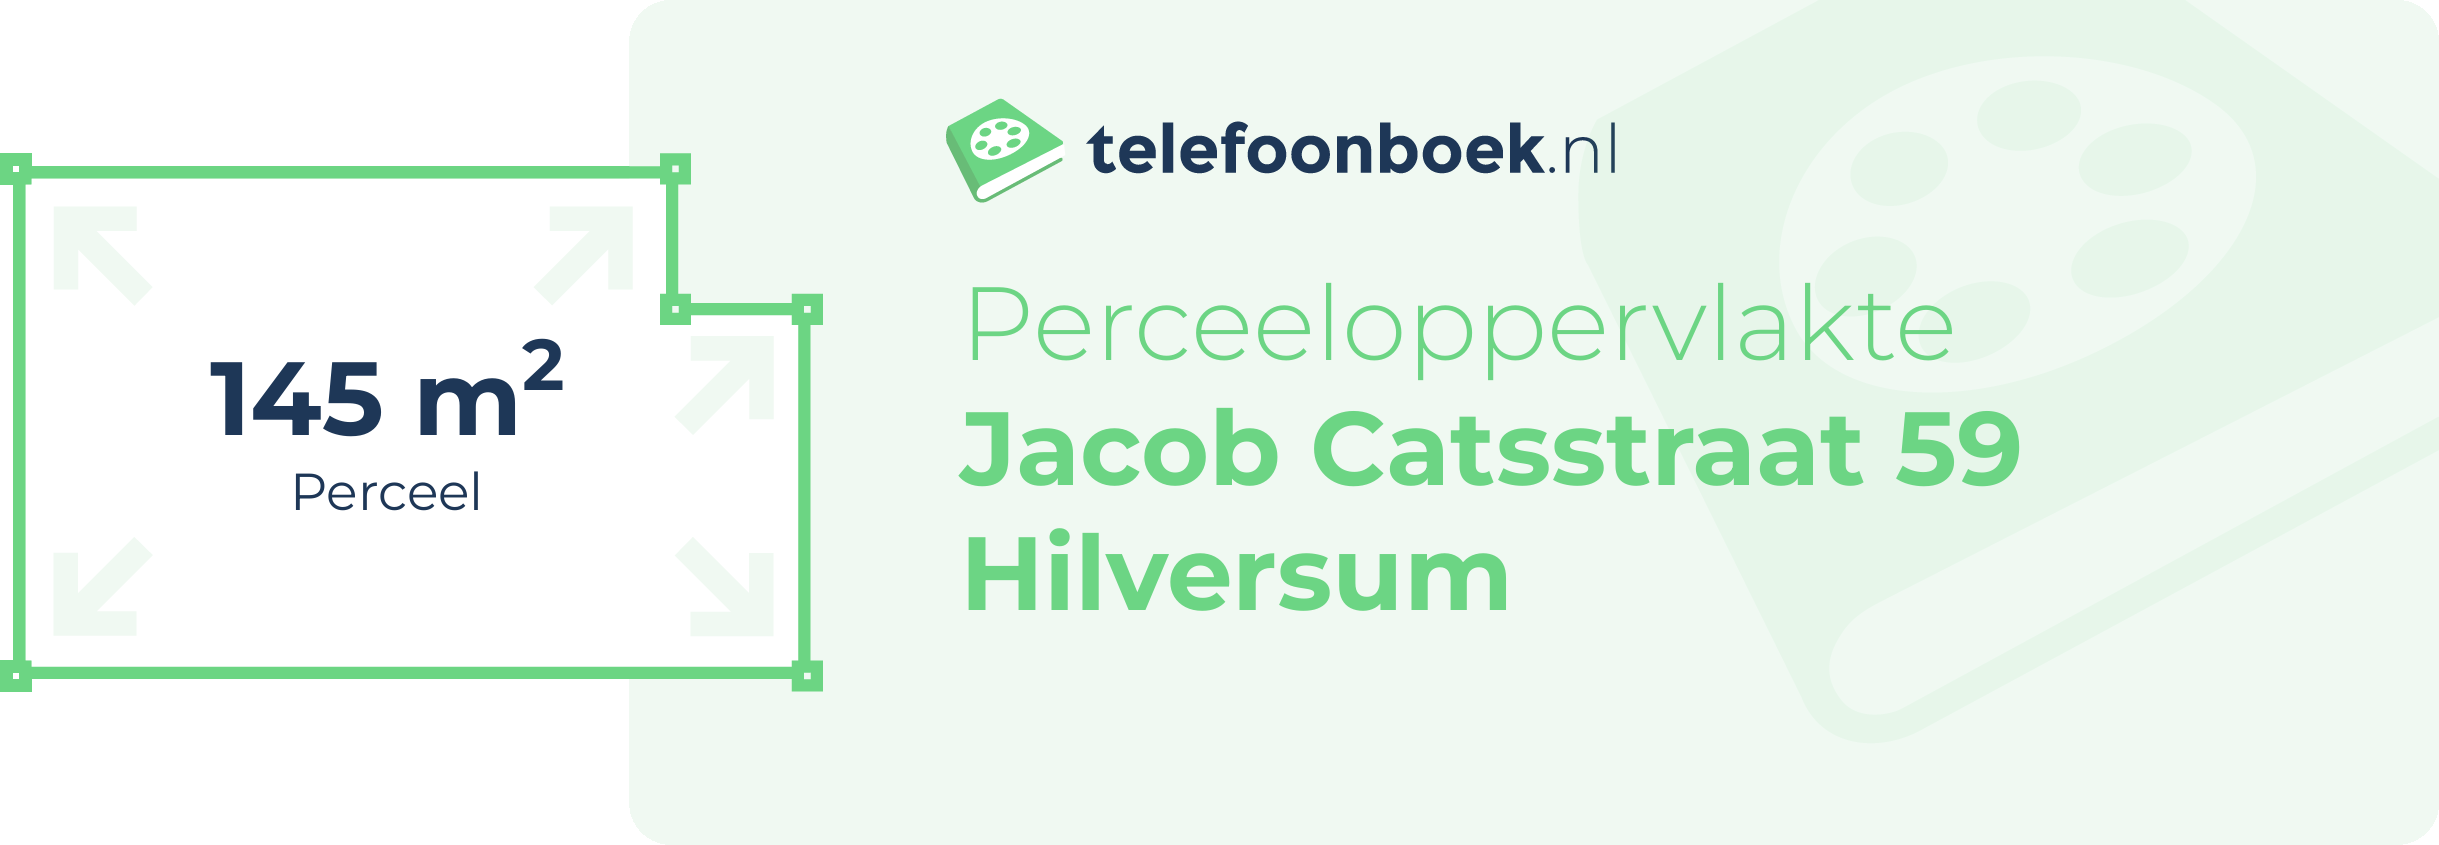 Perceeloppervlakte Jacob Catsstraat 59 Hilversum